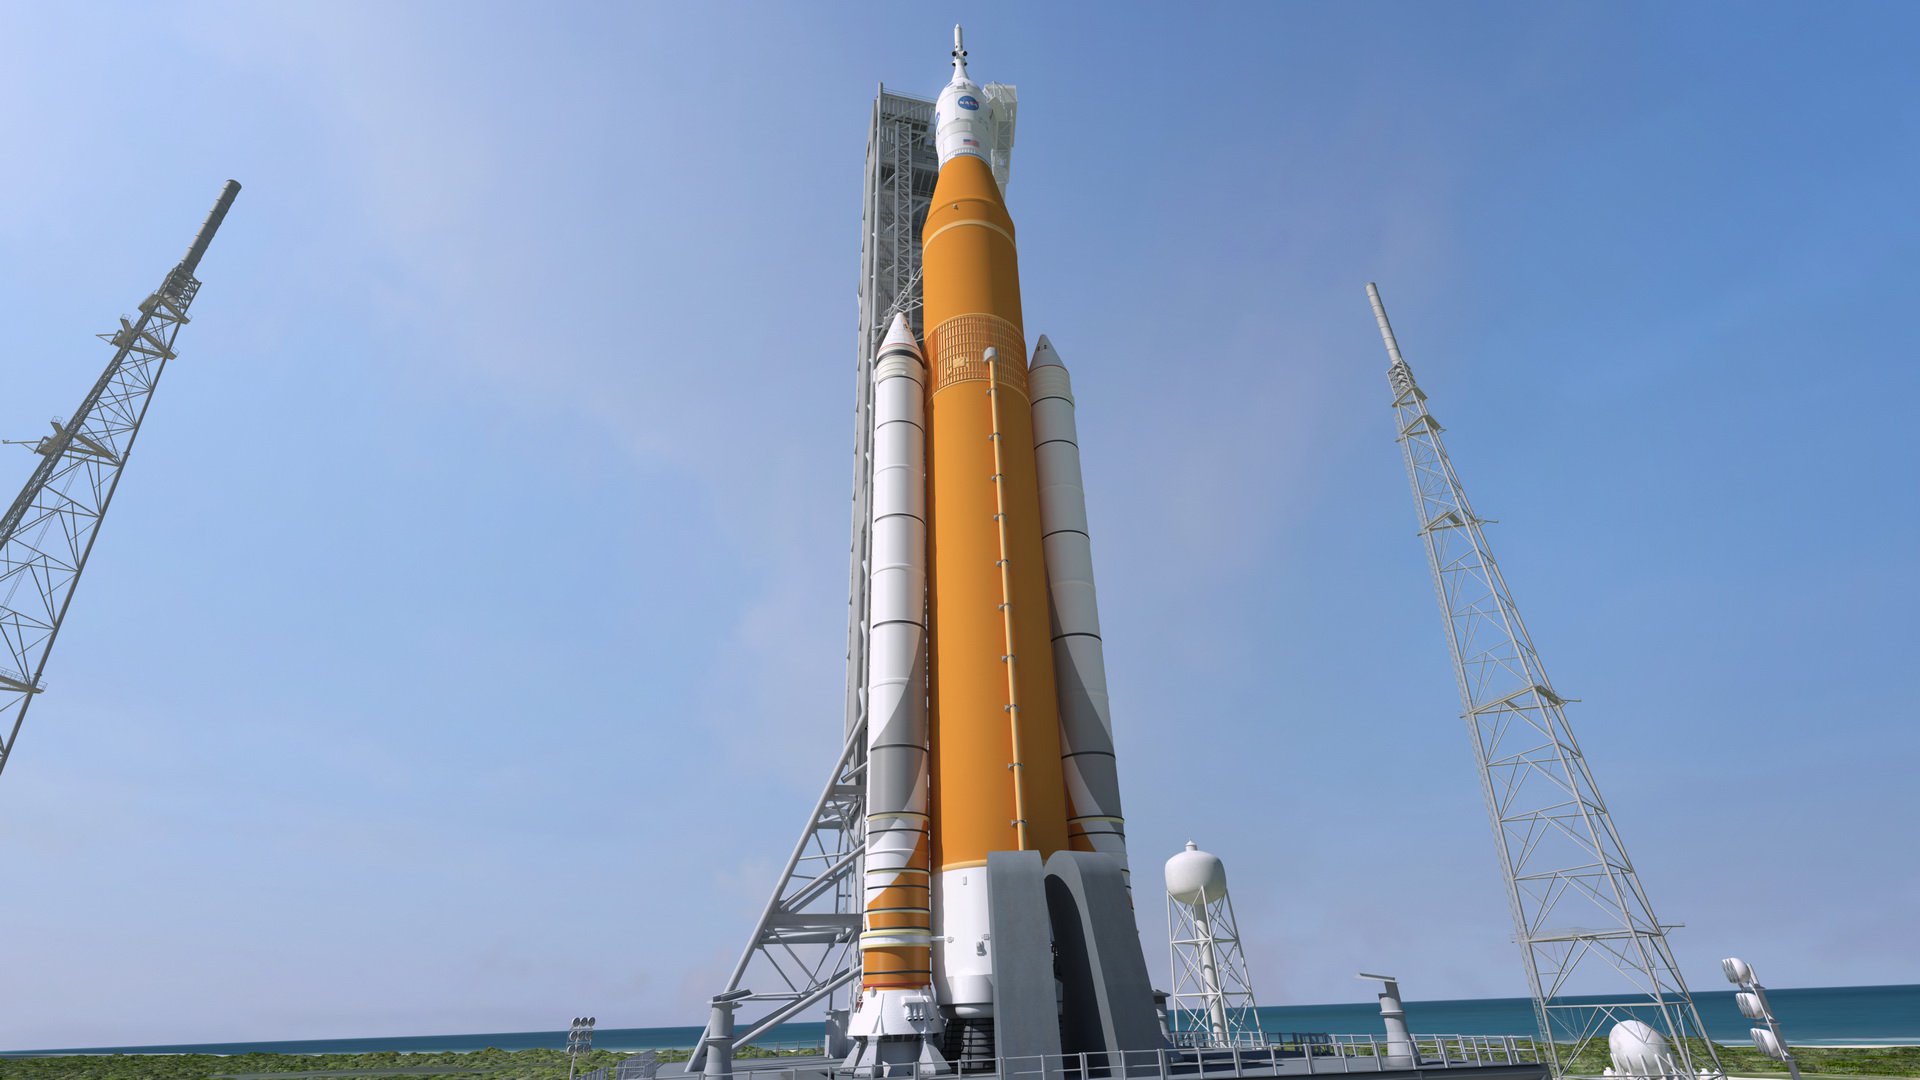 निरीक्षण में पता चला है कि वाहक रॉकेट SLS नासा के एक बहुत बड़ी समस्या है